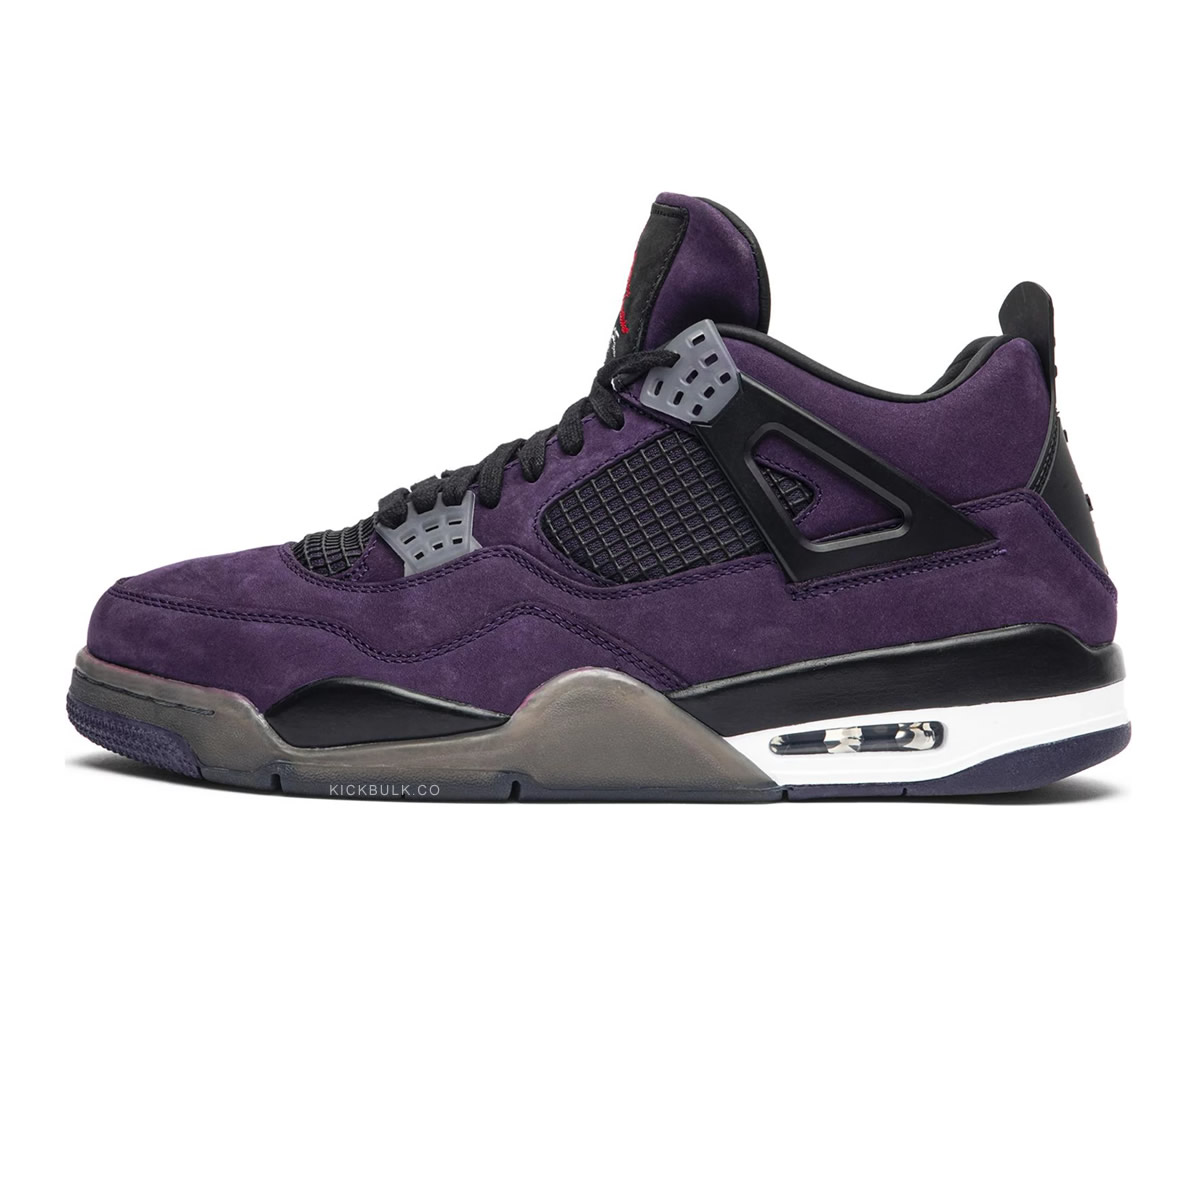 Travis Scott Air Jordan 4 Retro Purple Nike 766302 1 - www.kickbulk.cc